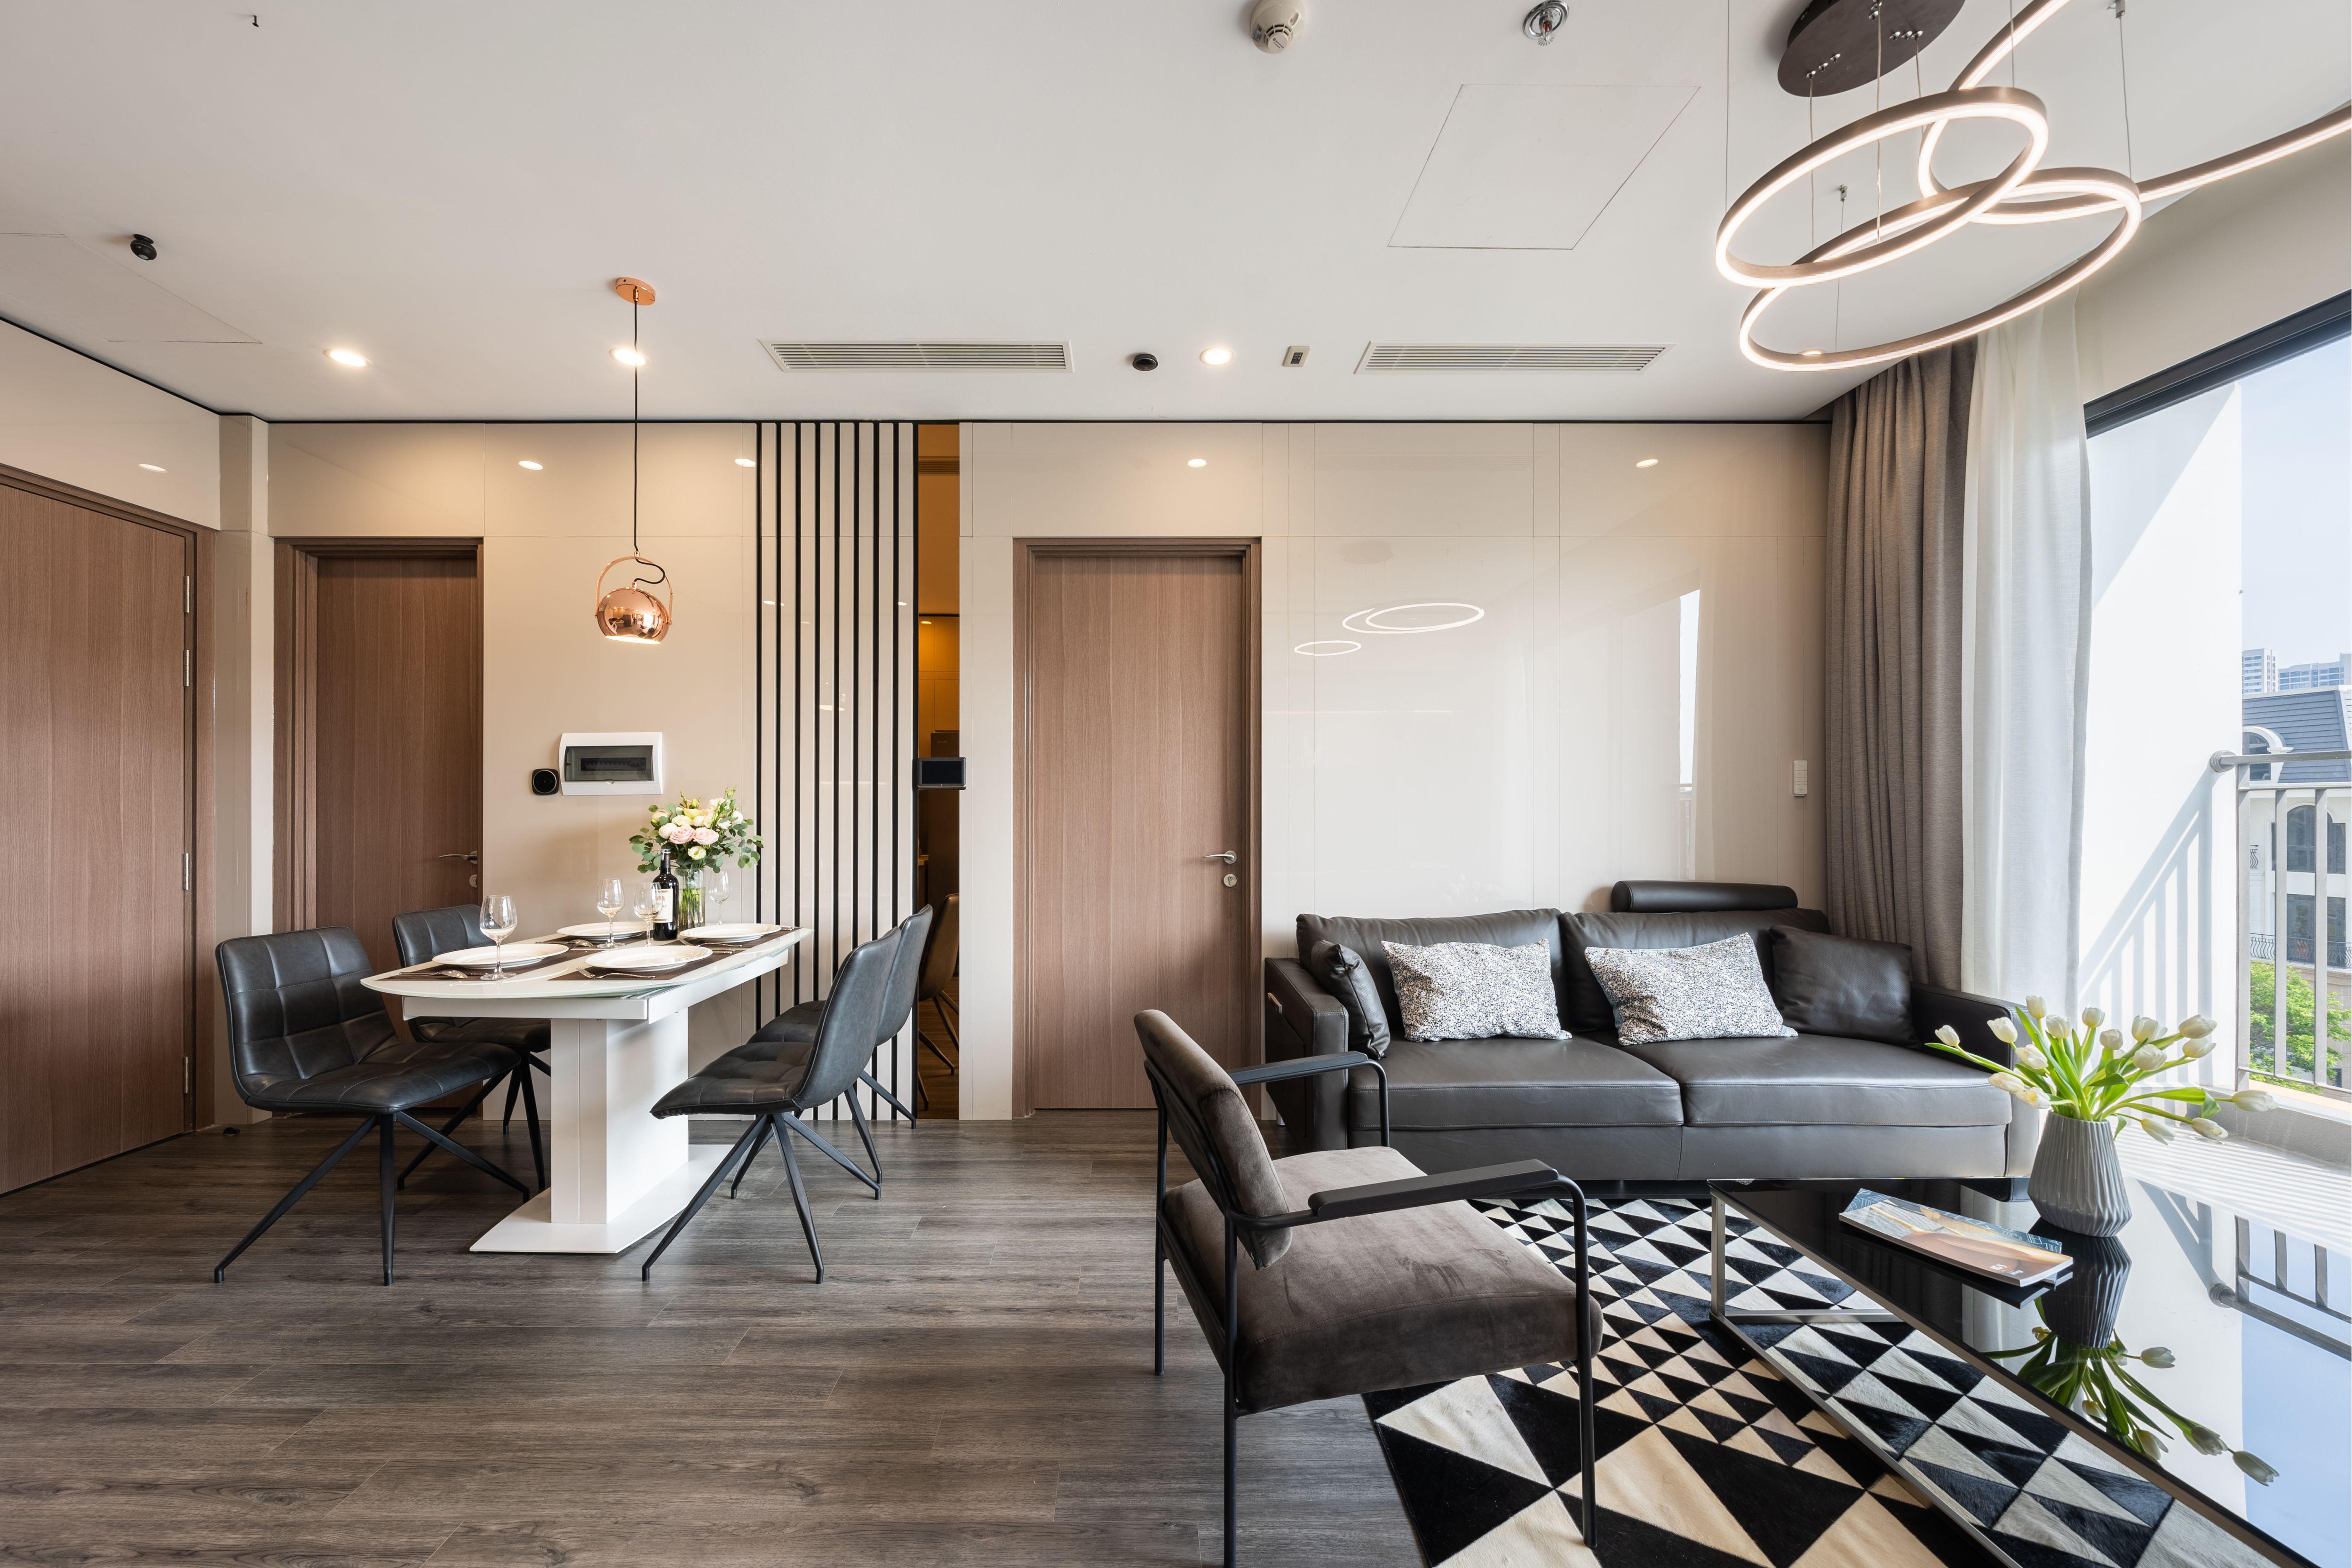 Cần cho thuê căn hộ 2 phòng ngủ phân khu Sapphire S2.11 Vinhomes Ocean Park diện tích 64m2 full nội thất